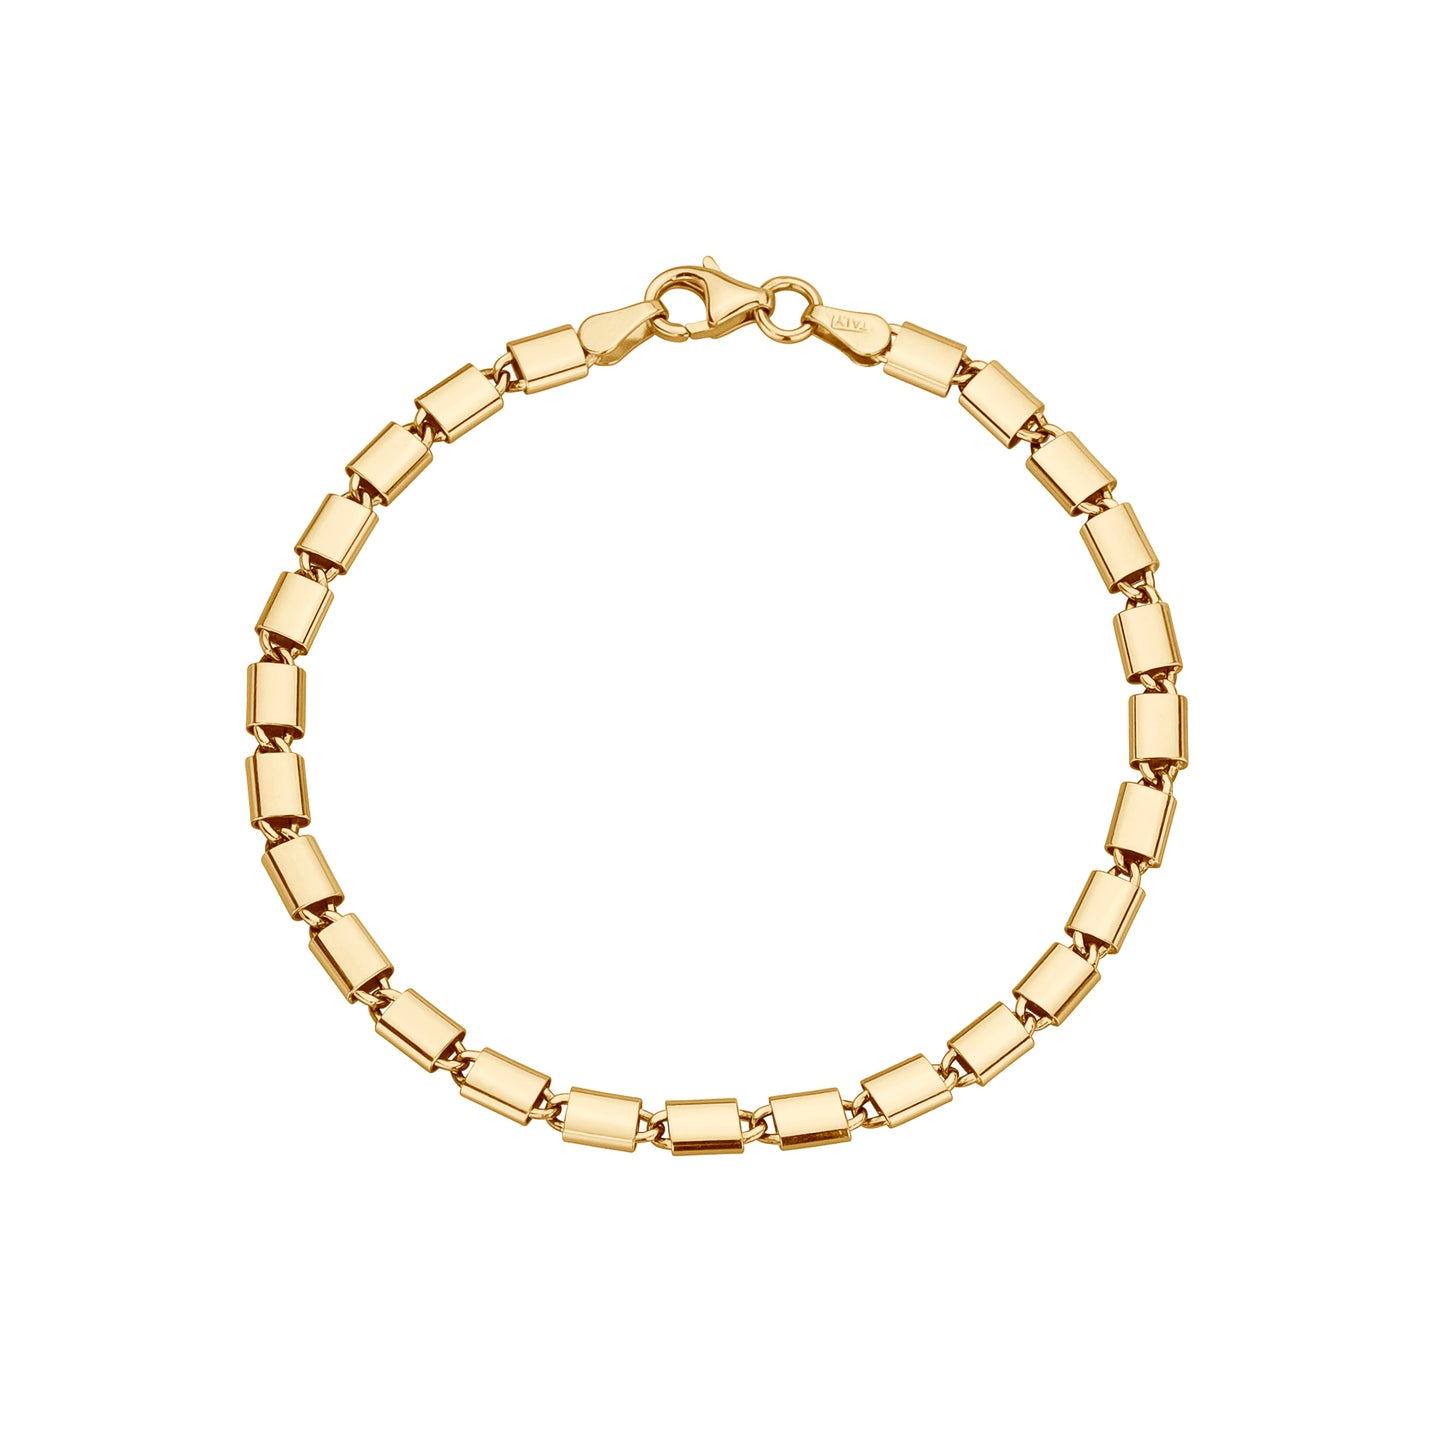 Gold Lock Link Bracelet - 7"